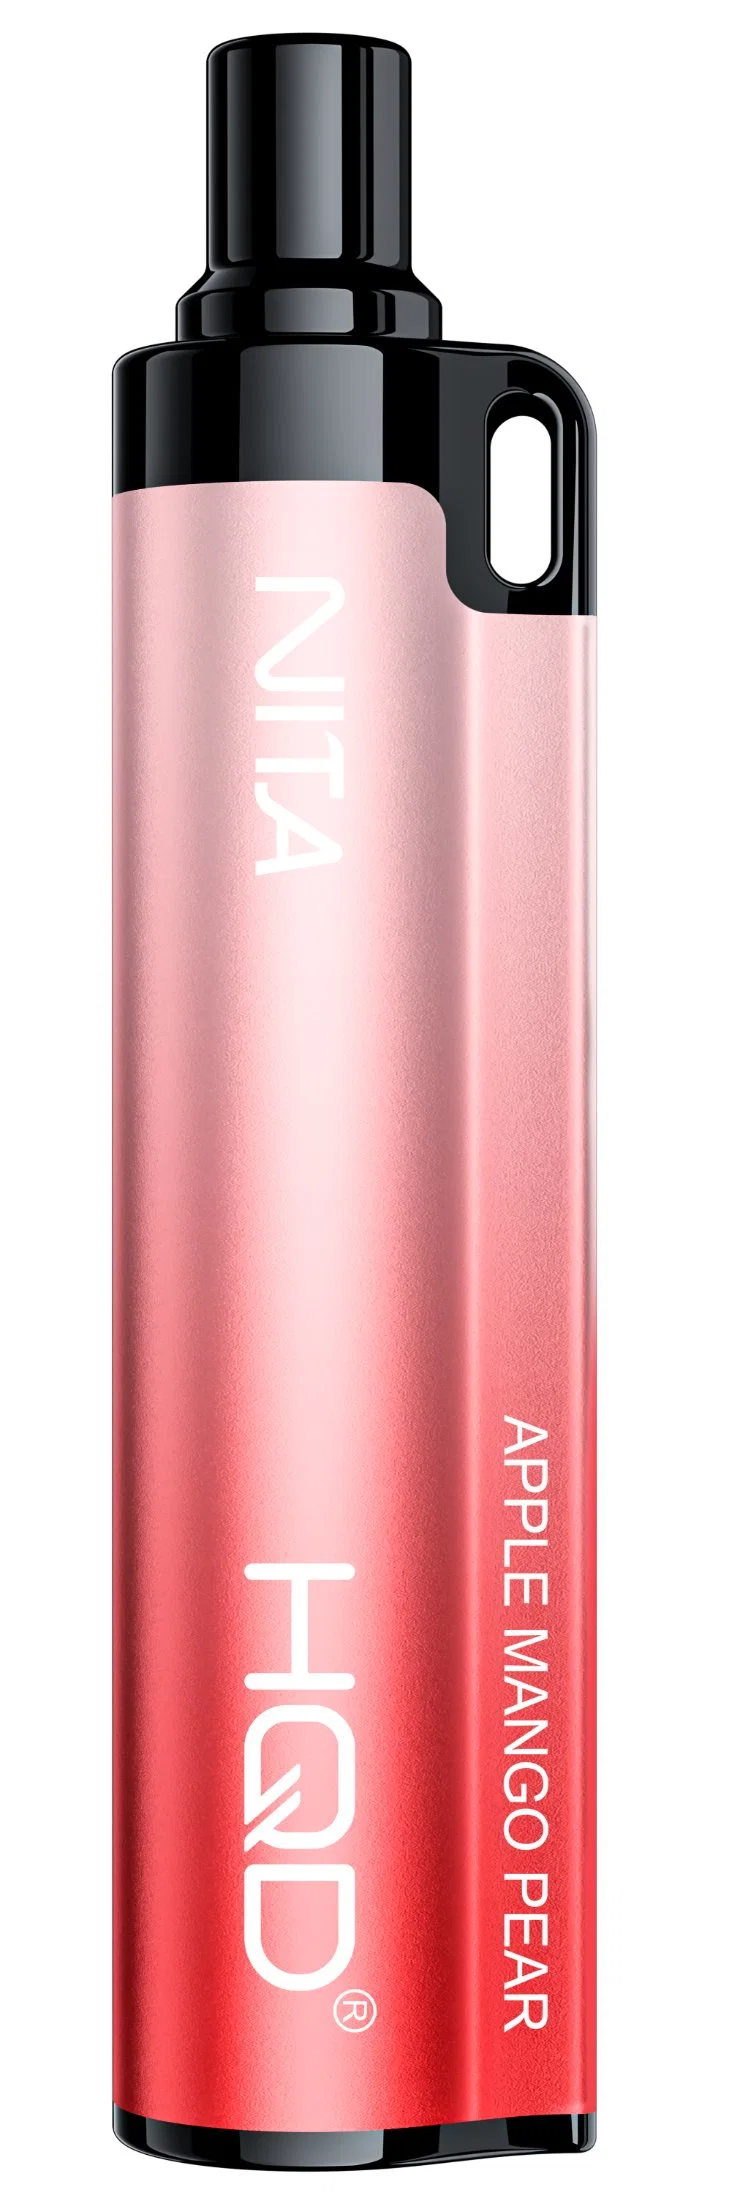 La fábrica de dispositivo de batería del cigarrillo electrónico Pen Vape Nita Hqd 600 inhalaciones conveniente poder cargar las baterías de cobalto puro